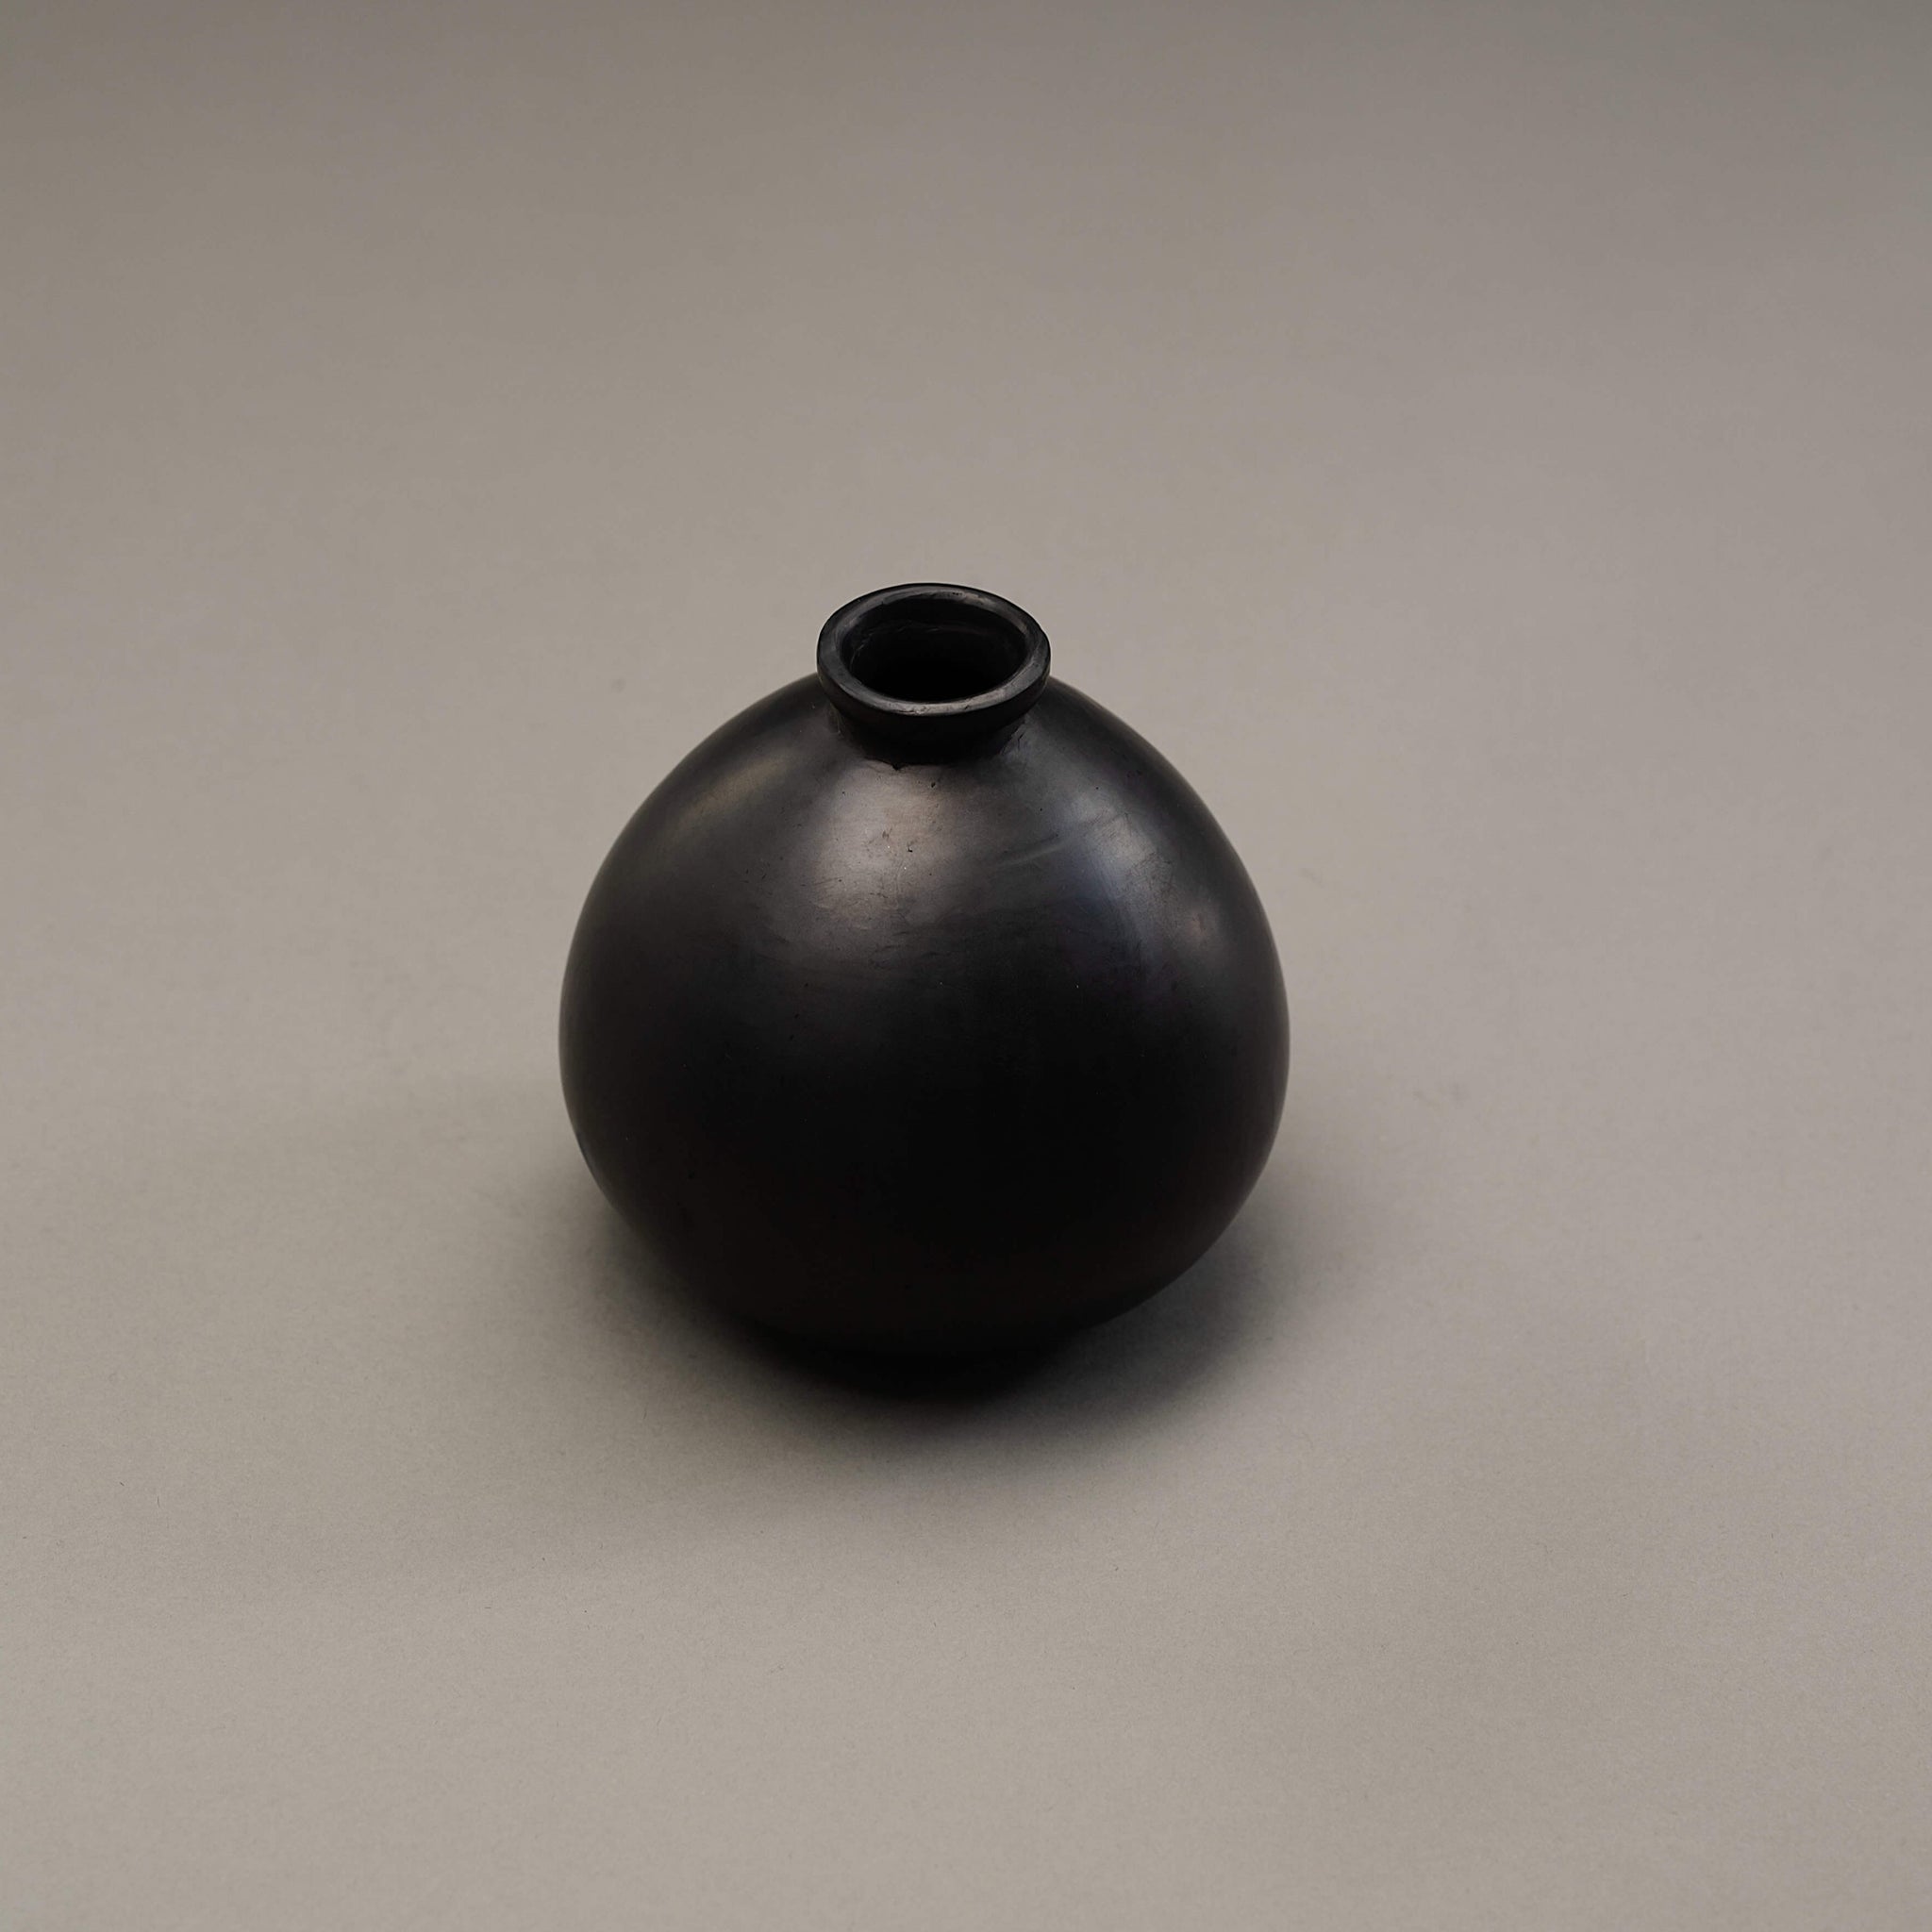 A black clay vase.